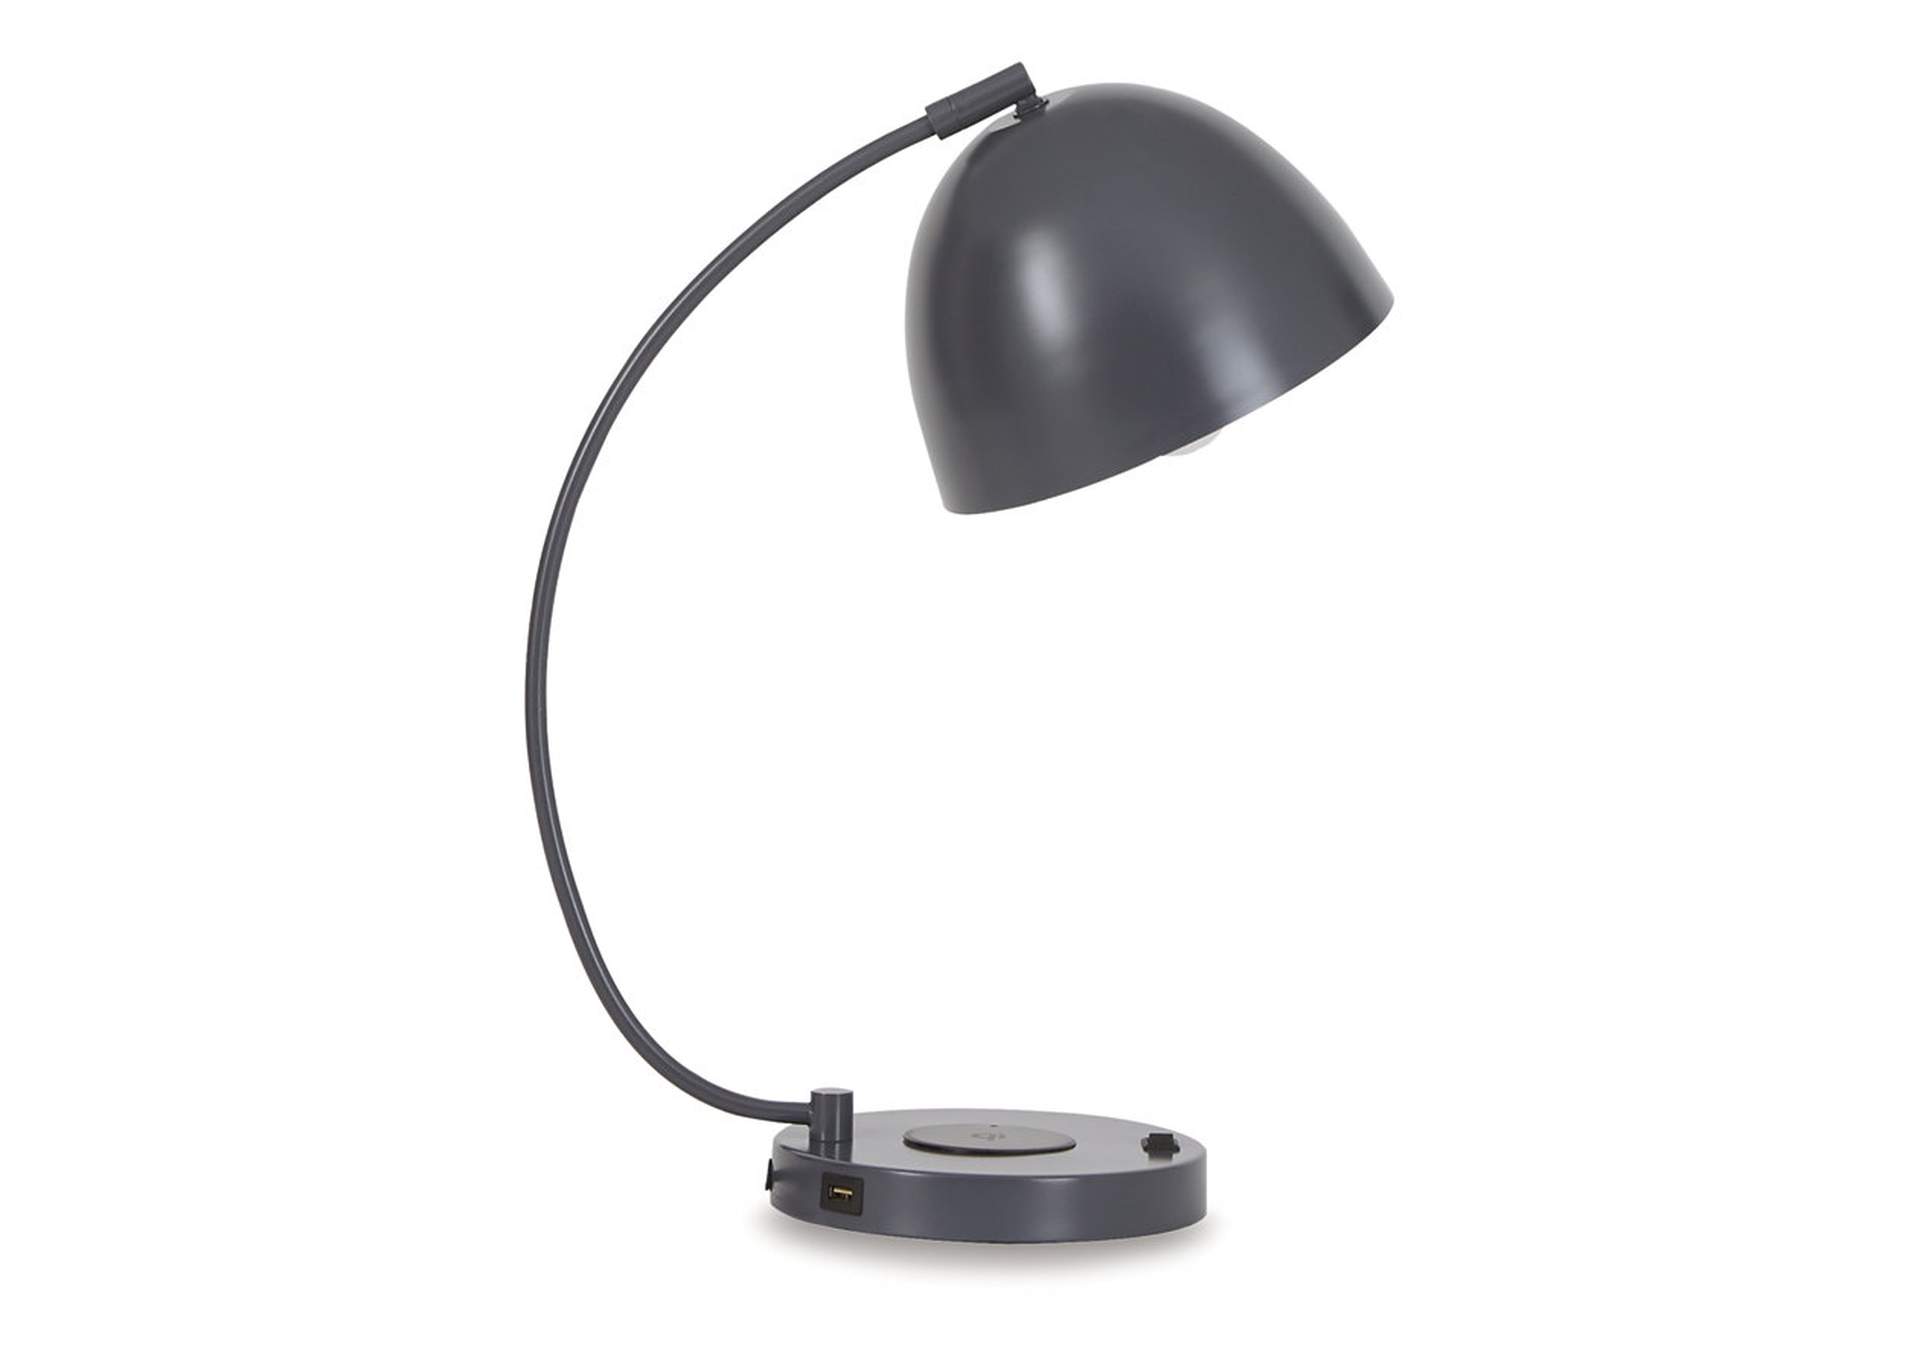 Austbeck Desk Lamp,Signature Design By Ashley